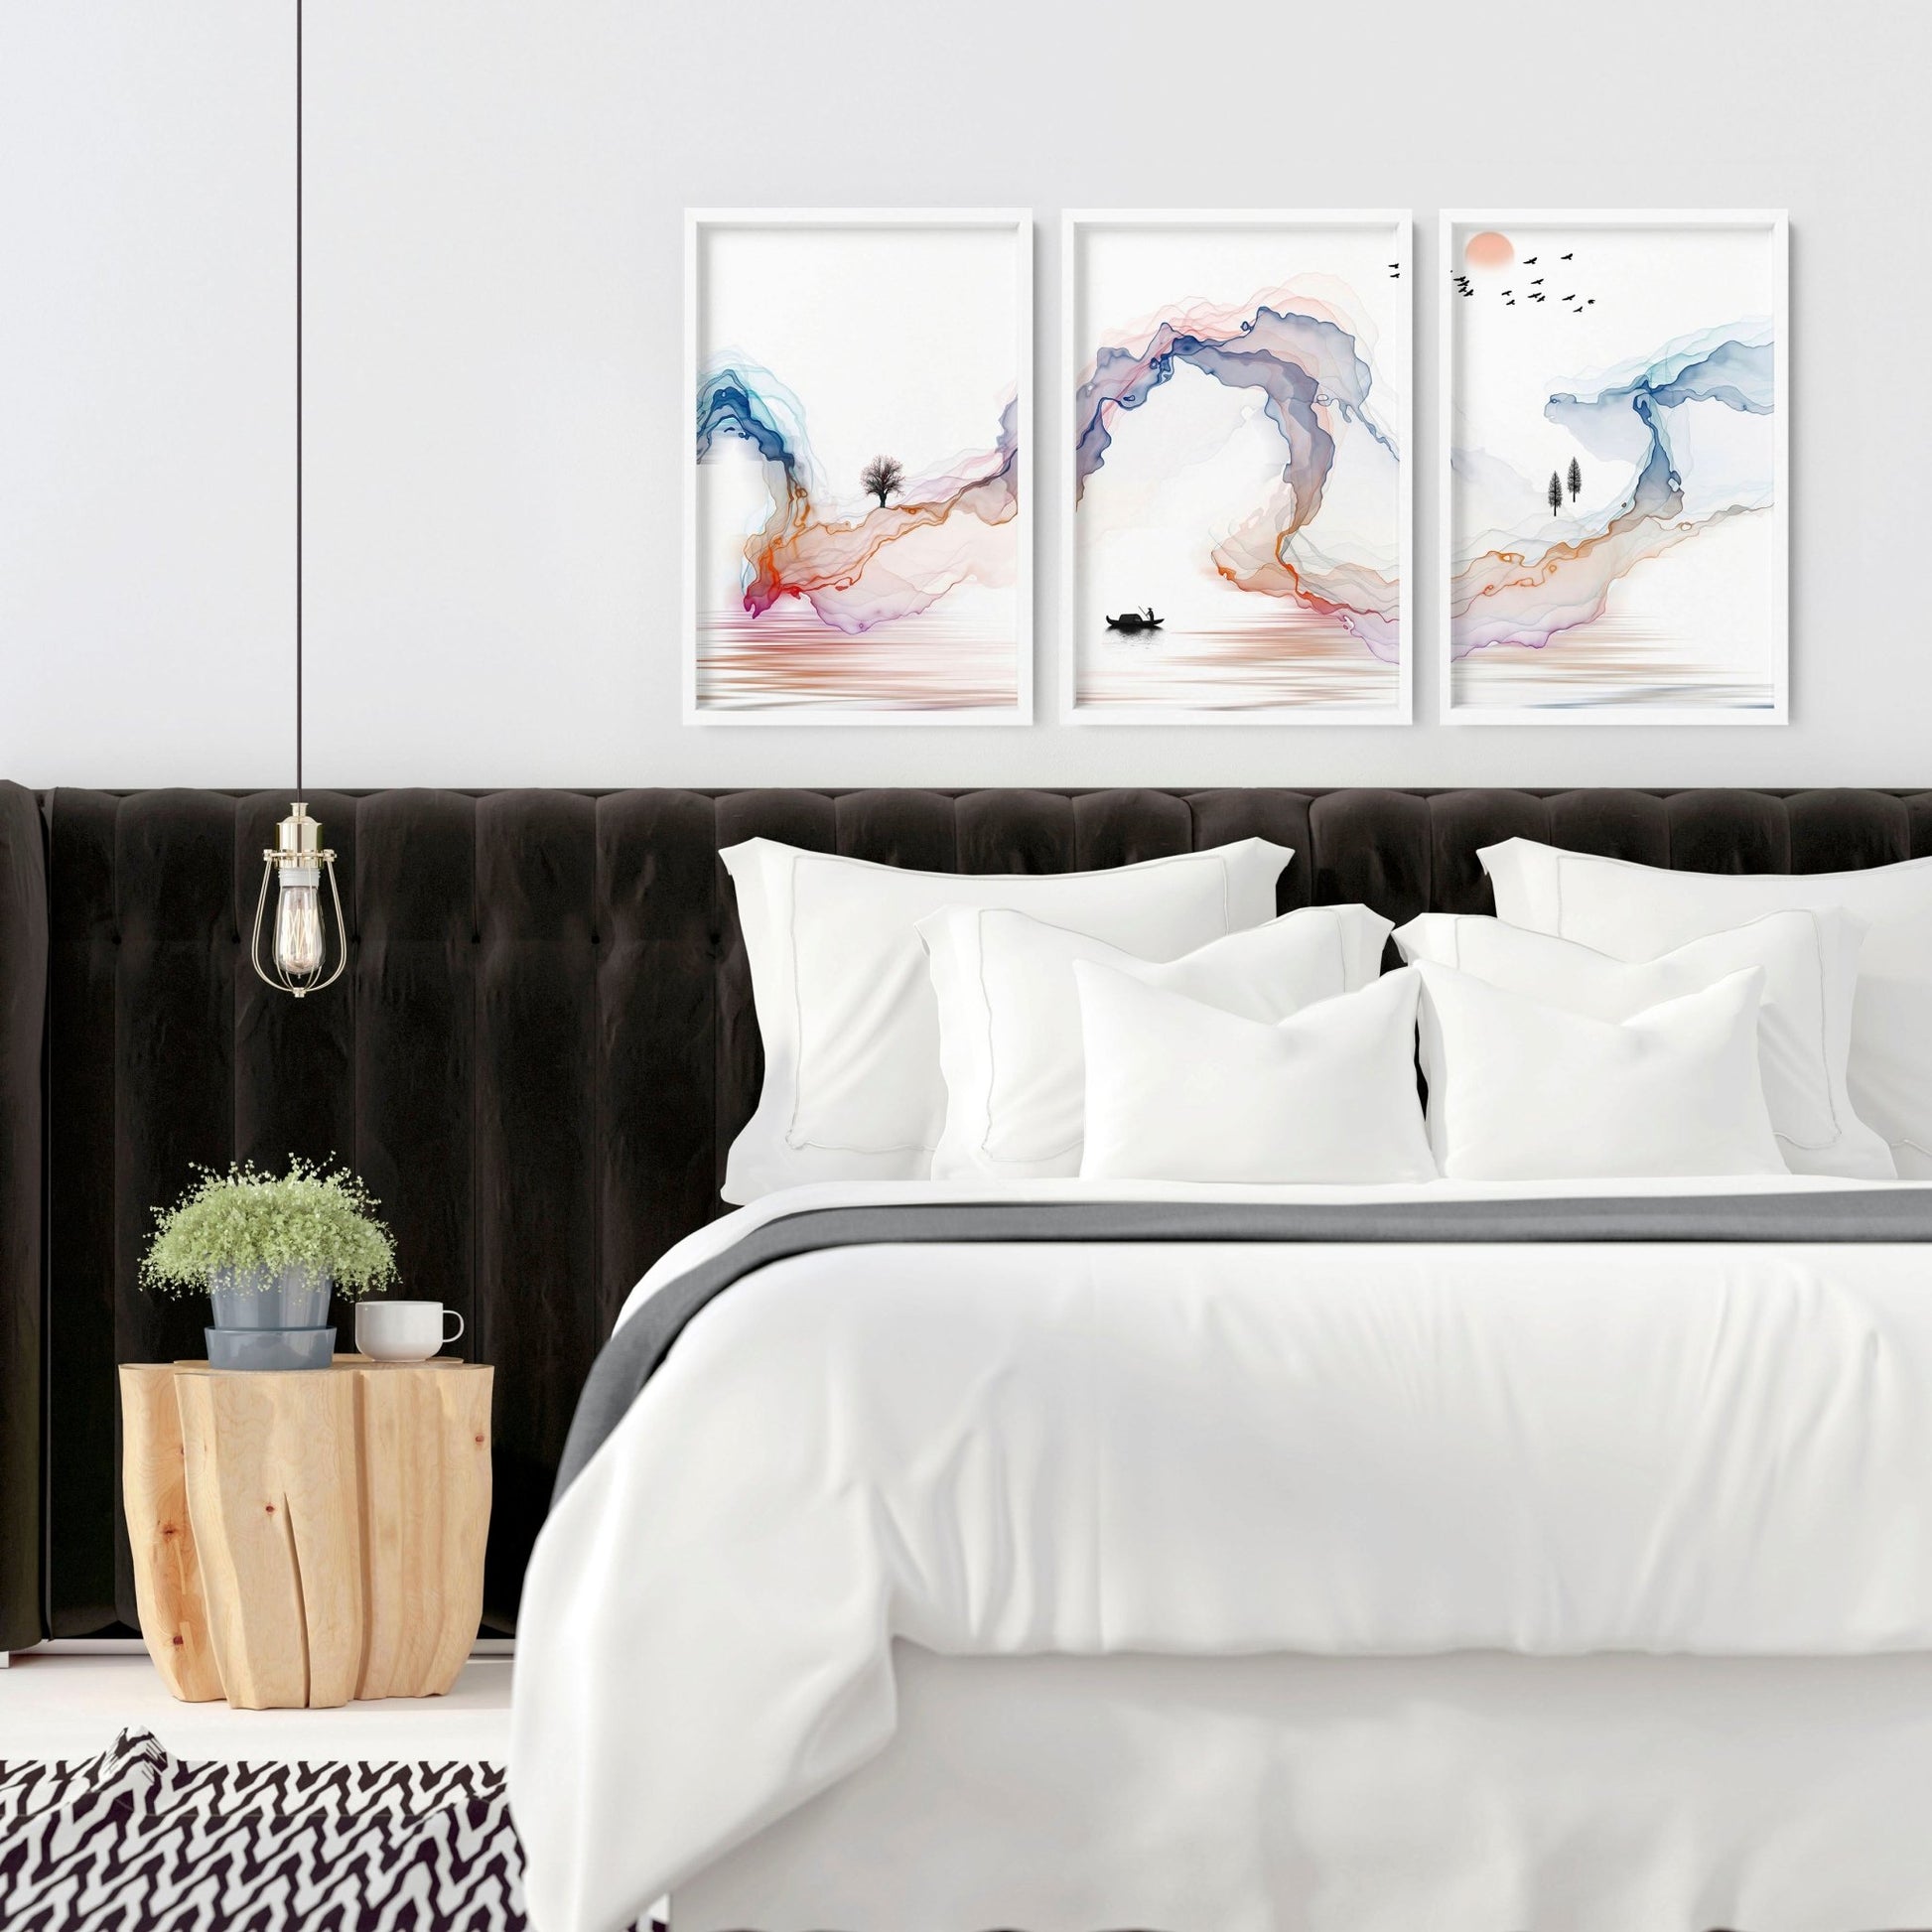 Japanese minimalist art | set of 3 wall art prints - About Wall Art